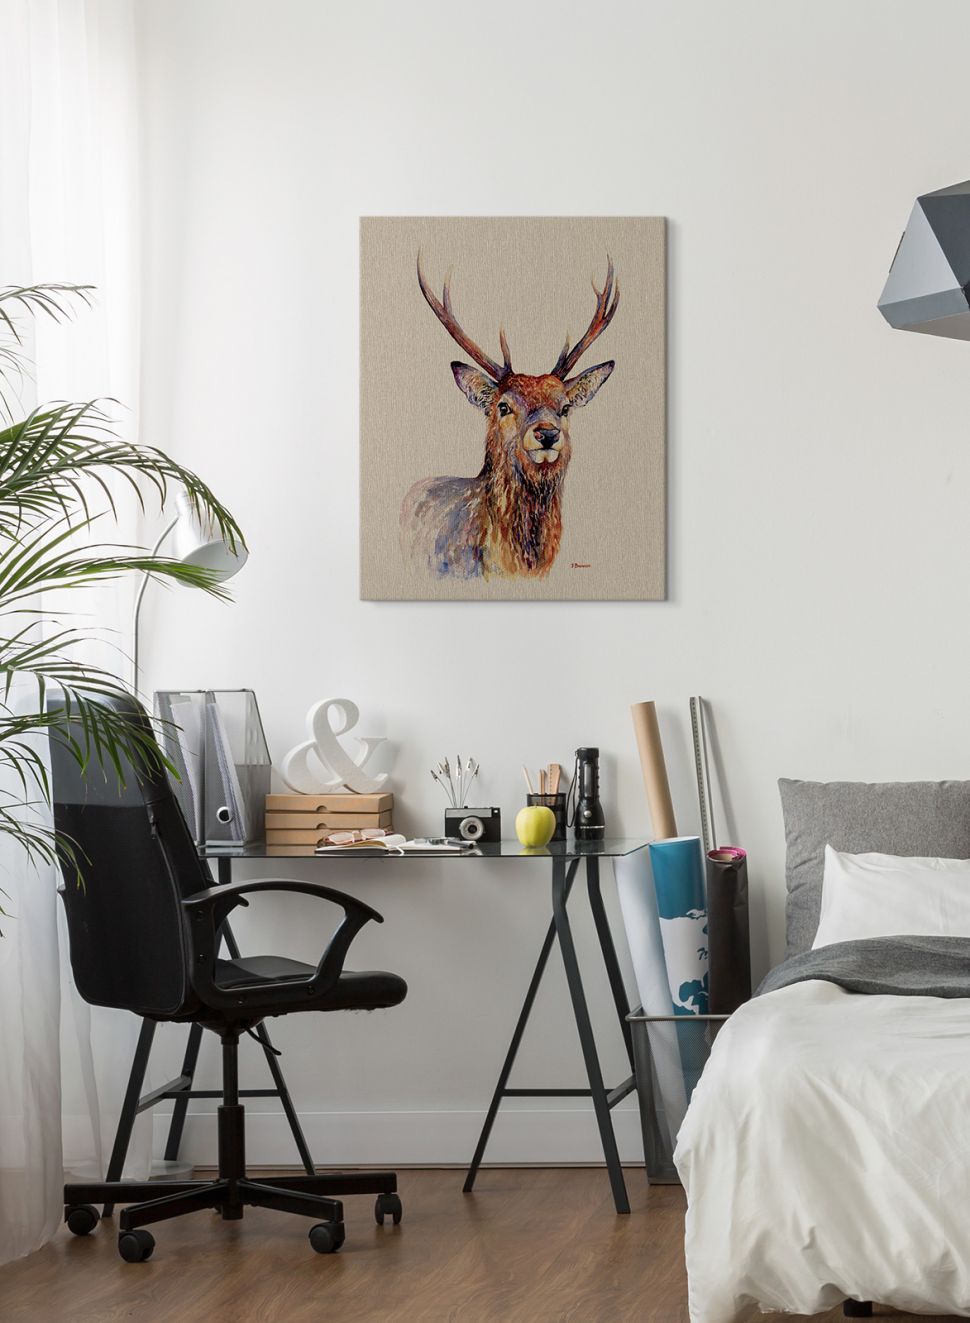 Obraz na płótnie z jeleniem o nazwie Proudlock wiszący w nowocześnie umeblowanej sypialni